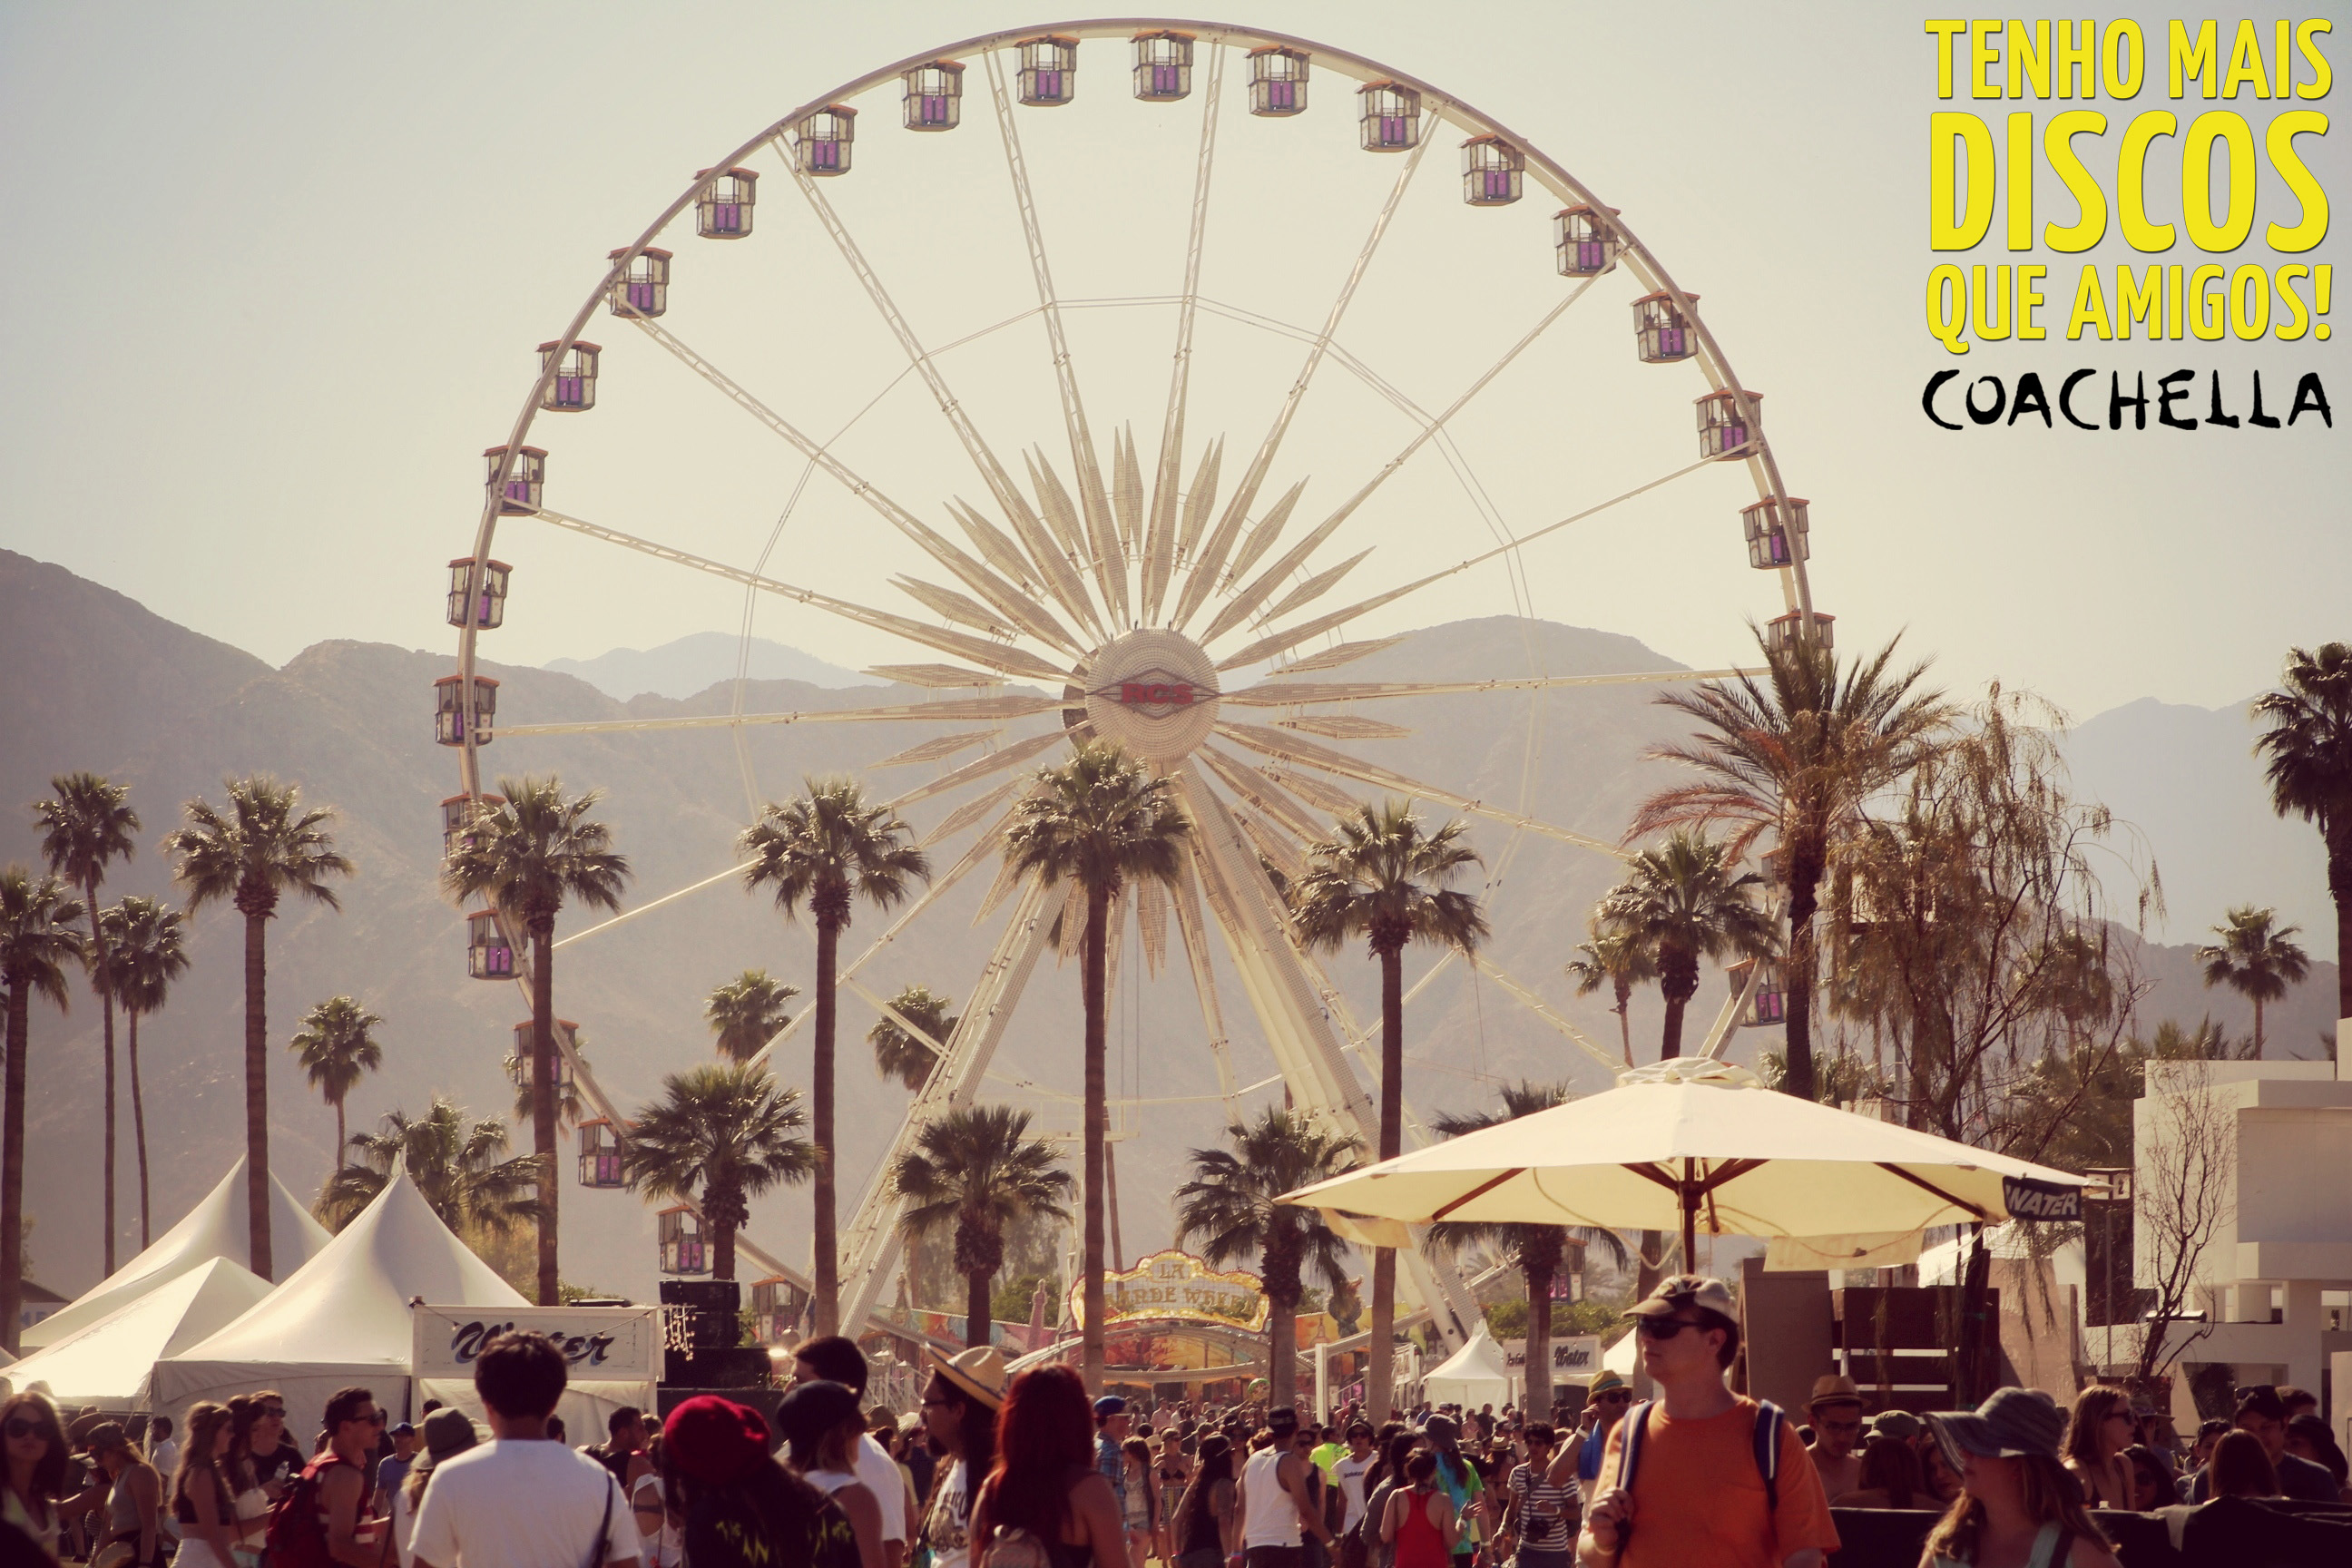 Resenha e fotos exclusivas do primeiro dia do Coachella (19/04/13) - Parte 1